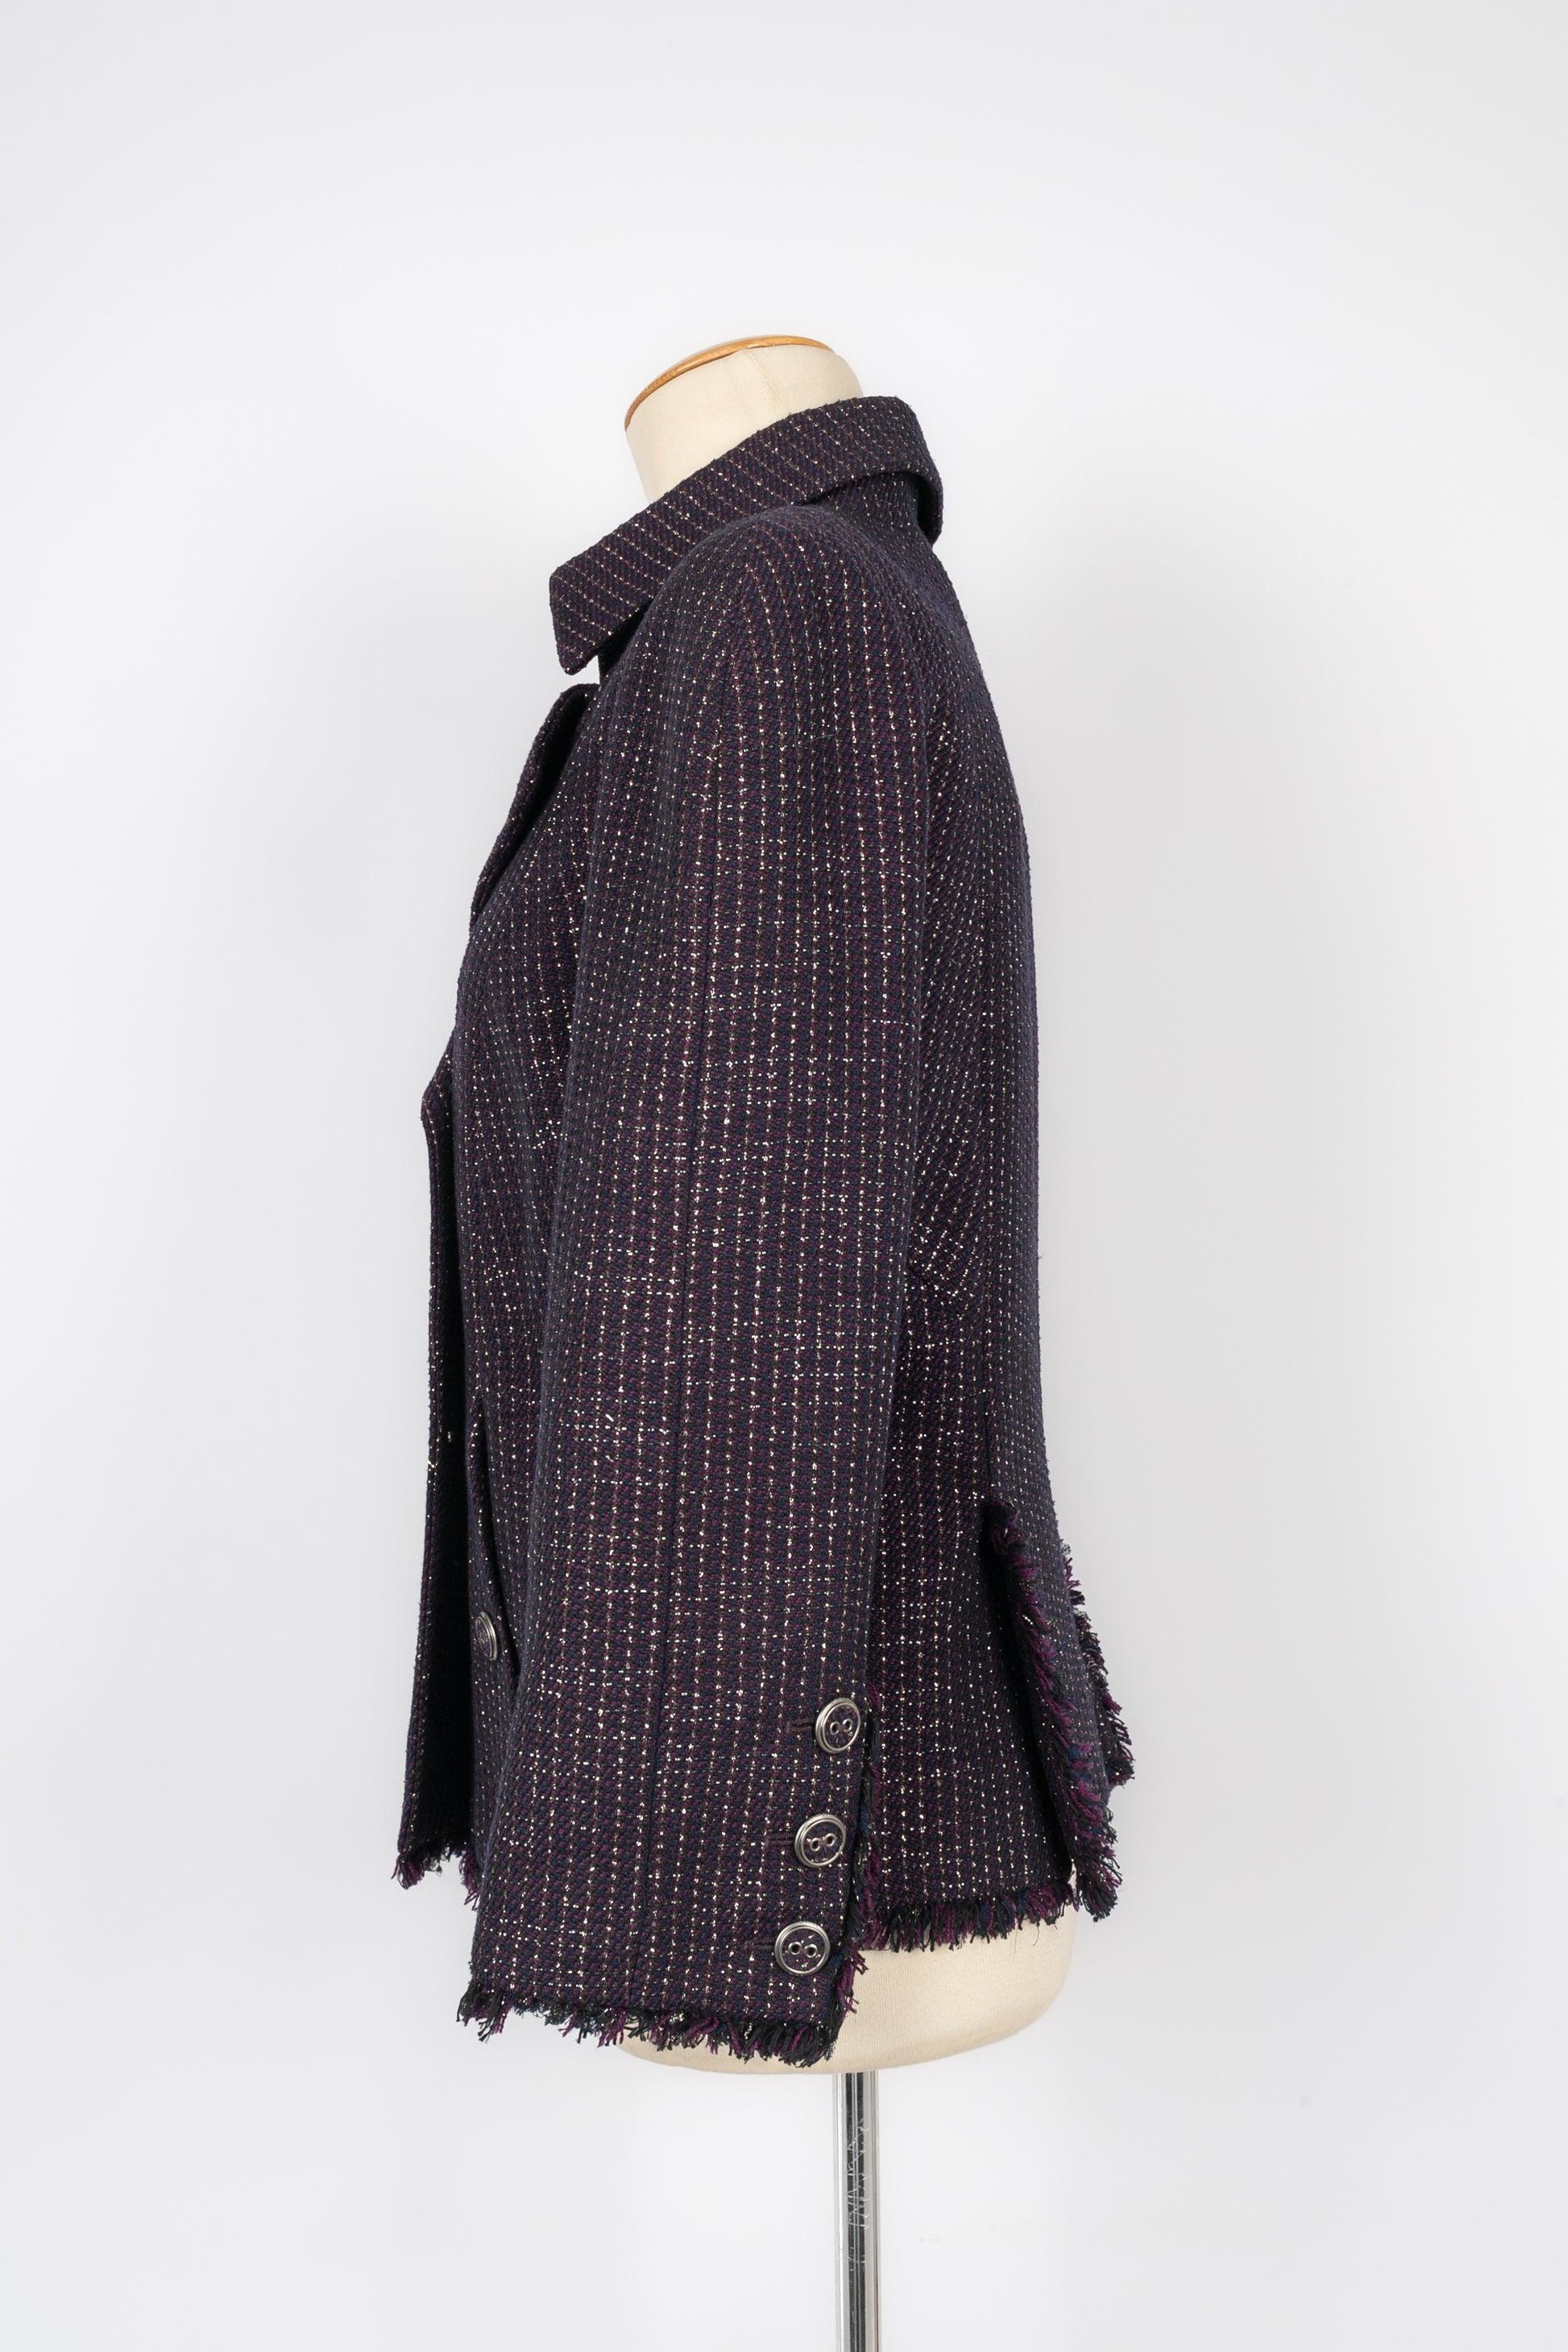 Chanel - (fabriqué en France) Veste en laine et coton mélangés dans des tons violets avec des fils de lurex argentés. Doublure en soie. Taille indiquée 42FR. Collectional printemps-été 2008.

Informations complémentaires :
Condit : Très bon